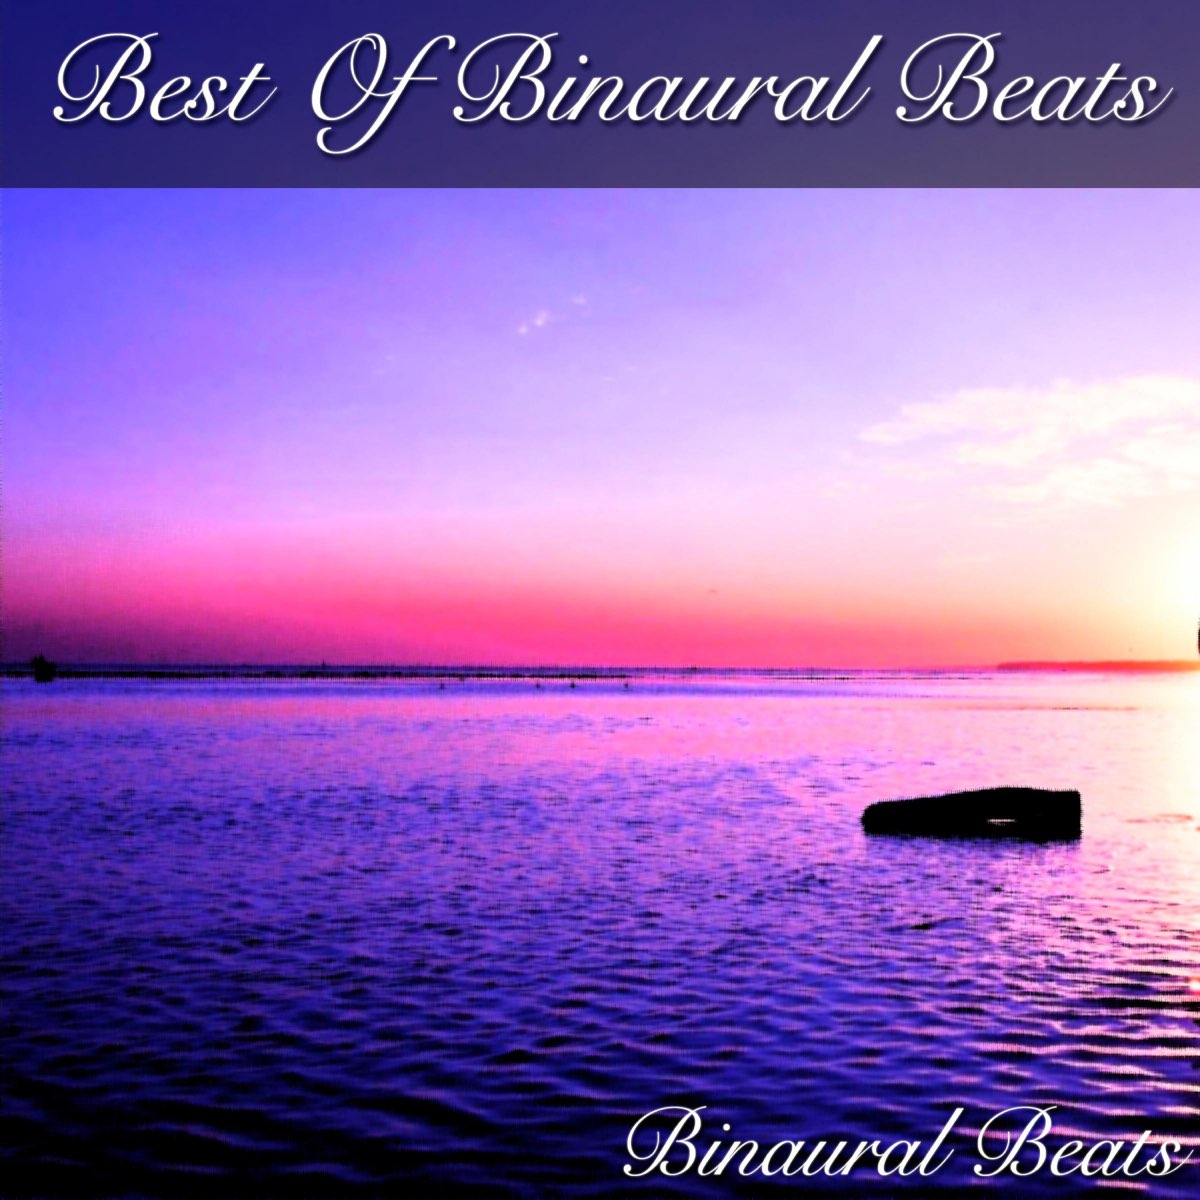 Best of Binaural Beats by Binaural Beats on Apple Music